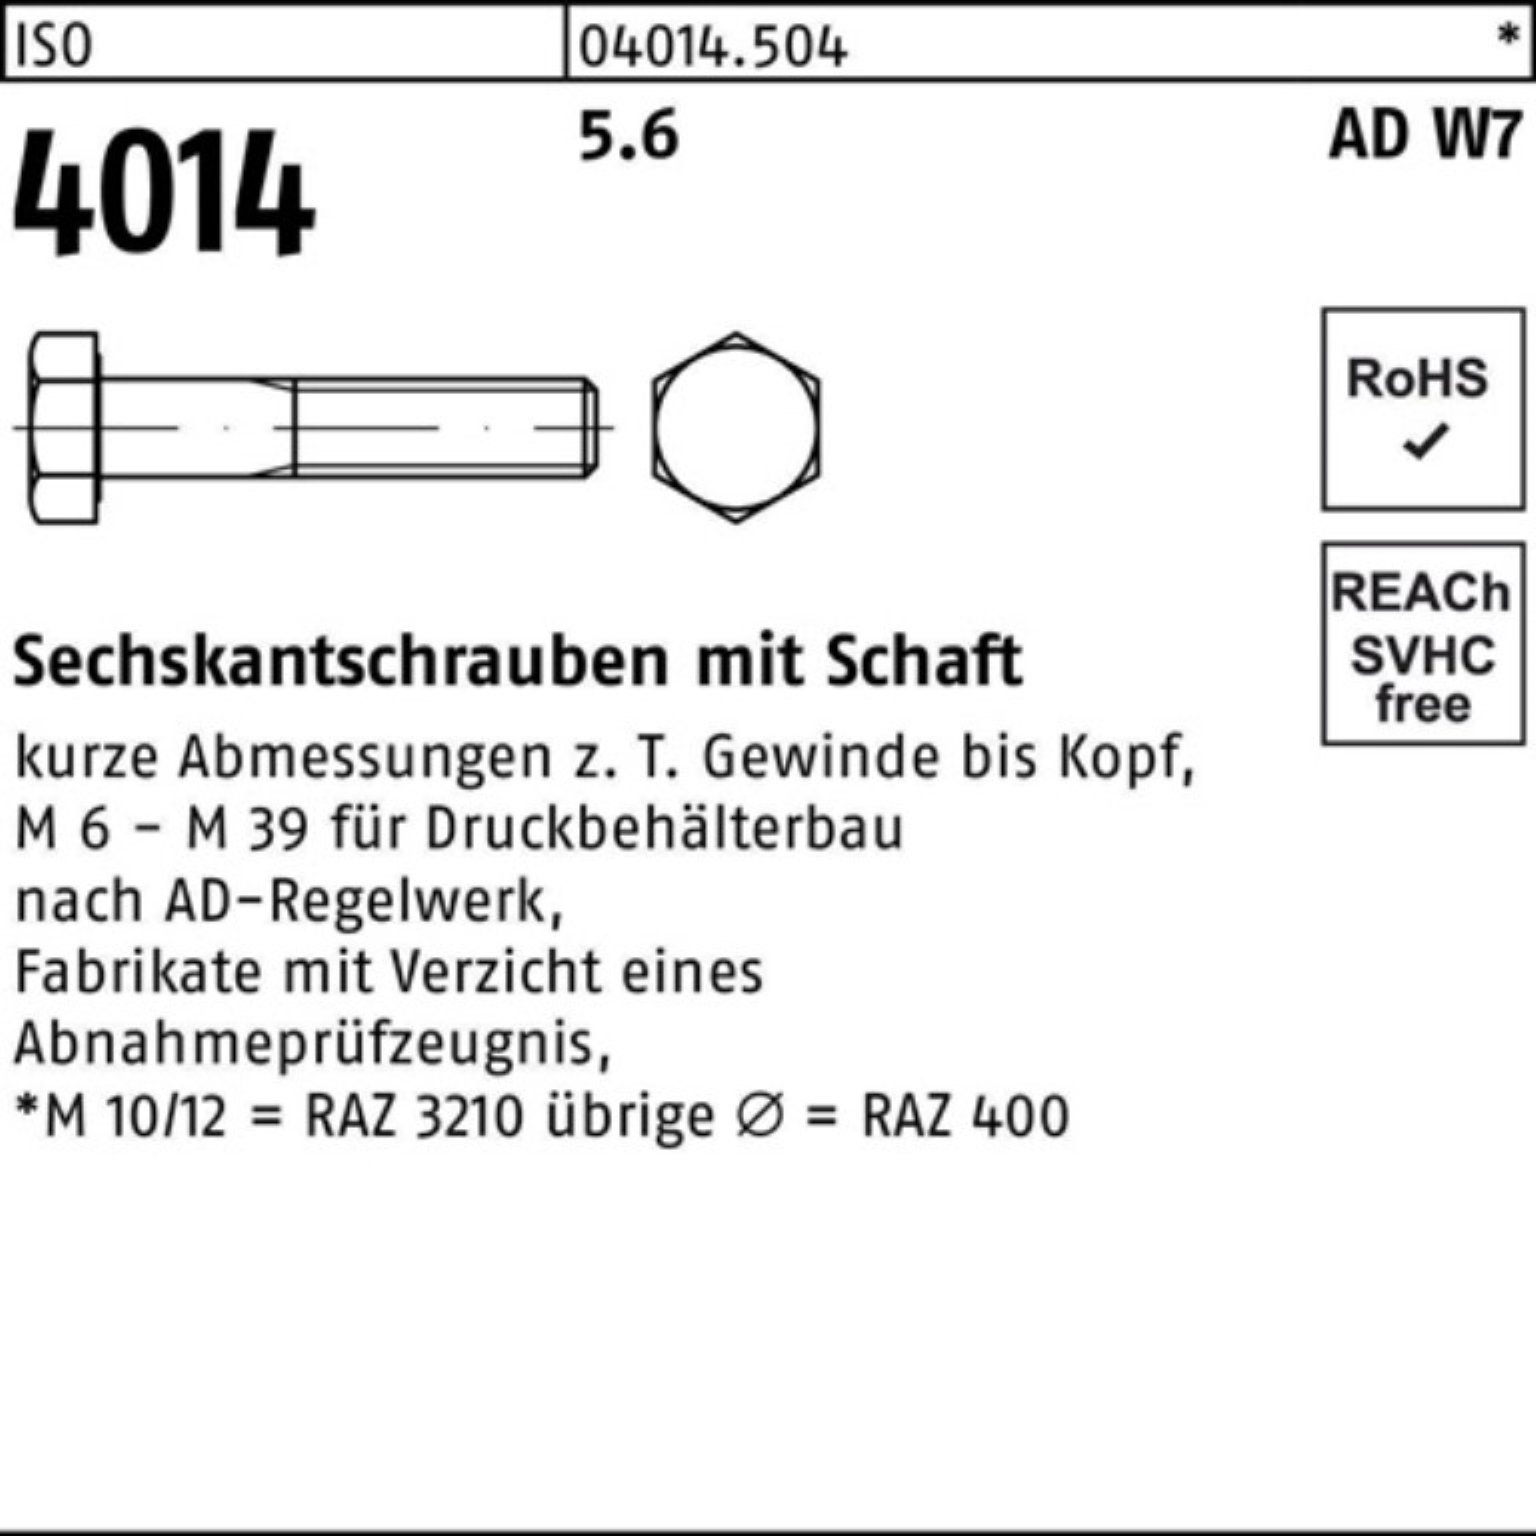 Bufab Sechskantschraube 100er Stück M33x 5.6 1 4014 140 Pack W7 Sechskantschraube ISO Schaft